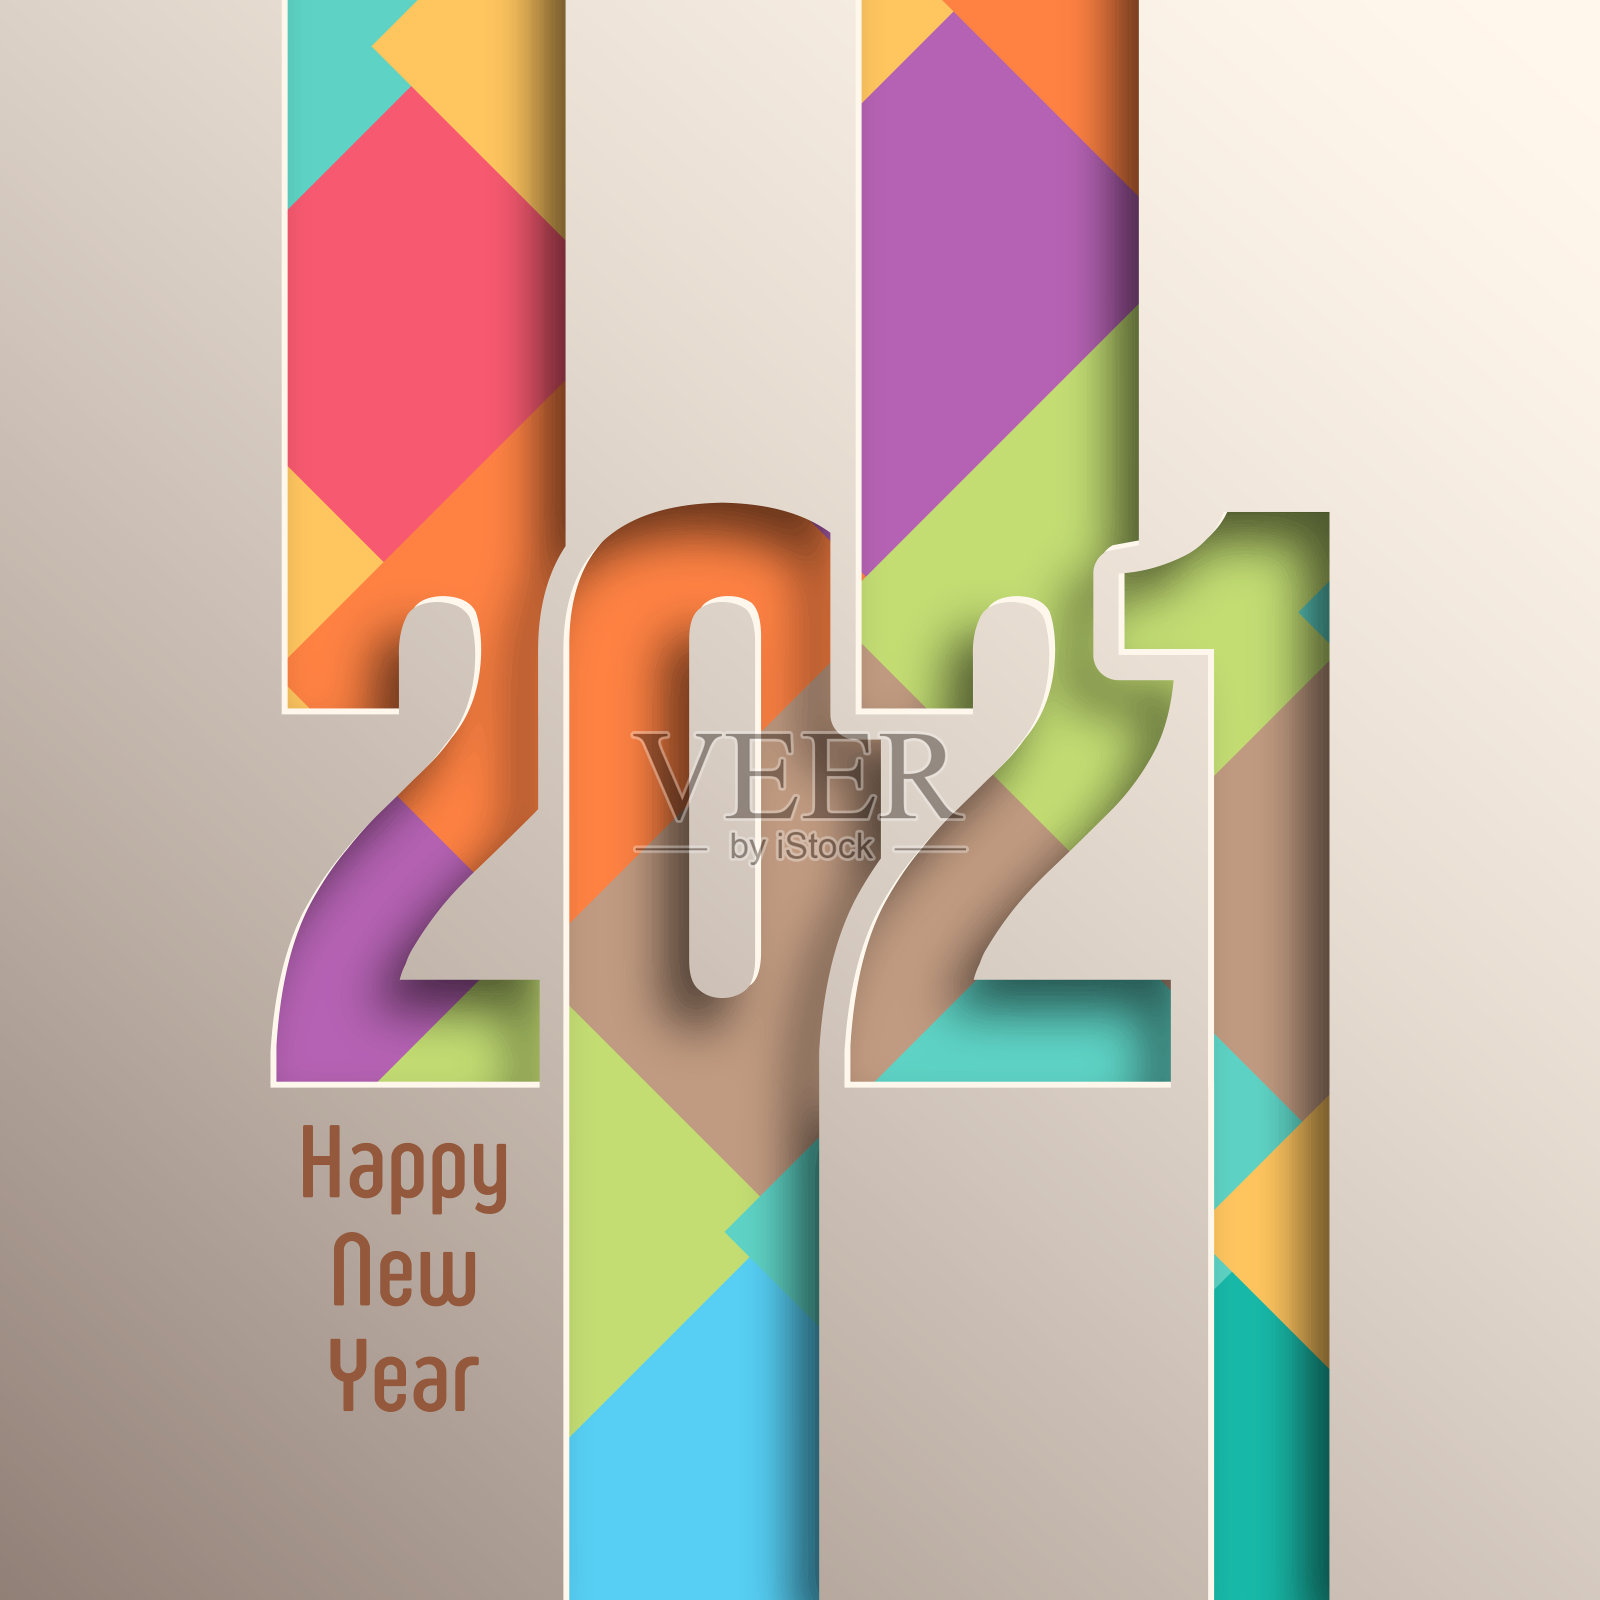 文字设计矢量2021年新年快乐。插画图片素材